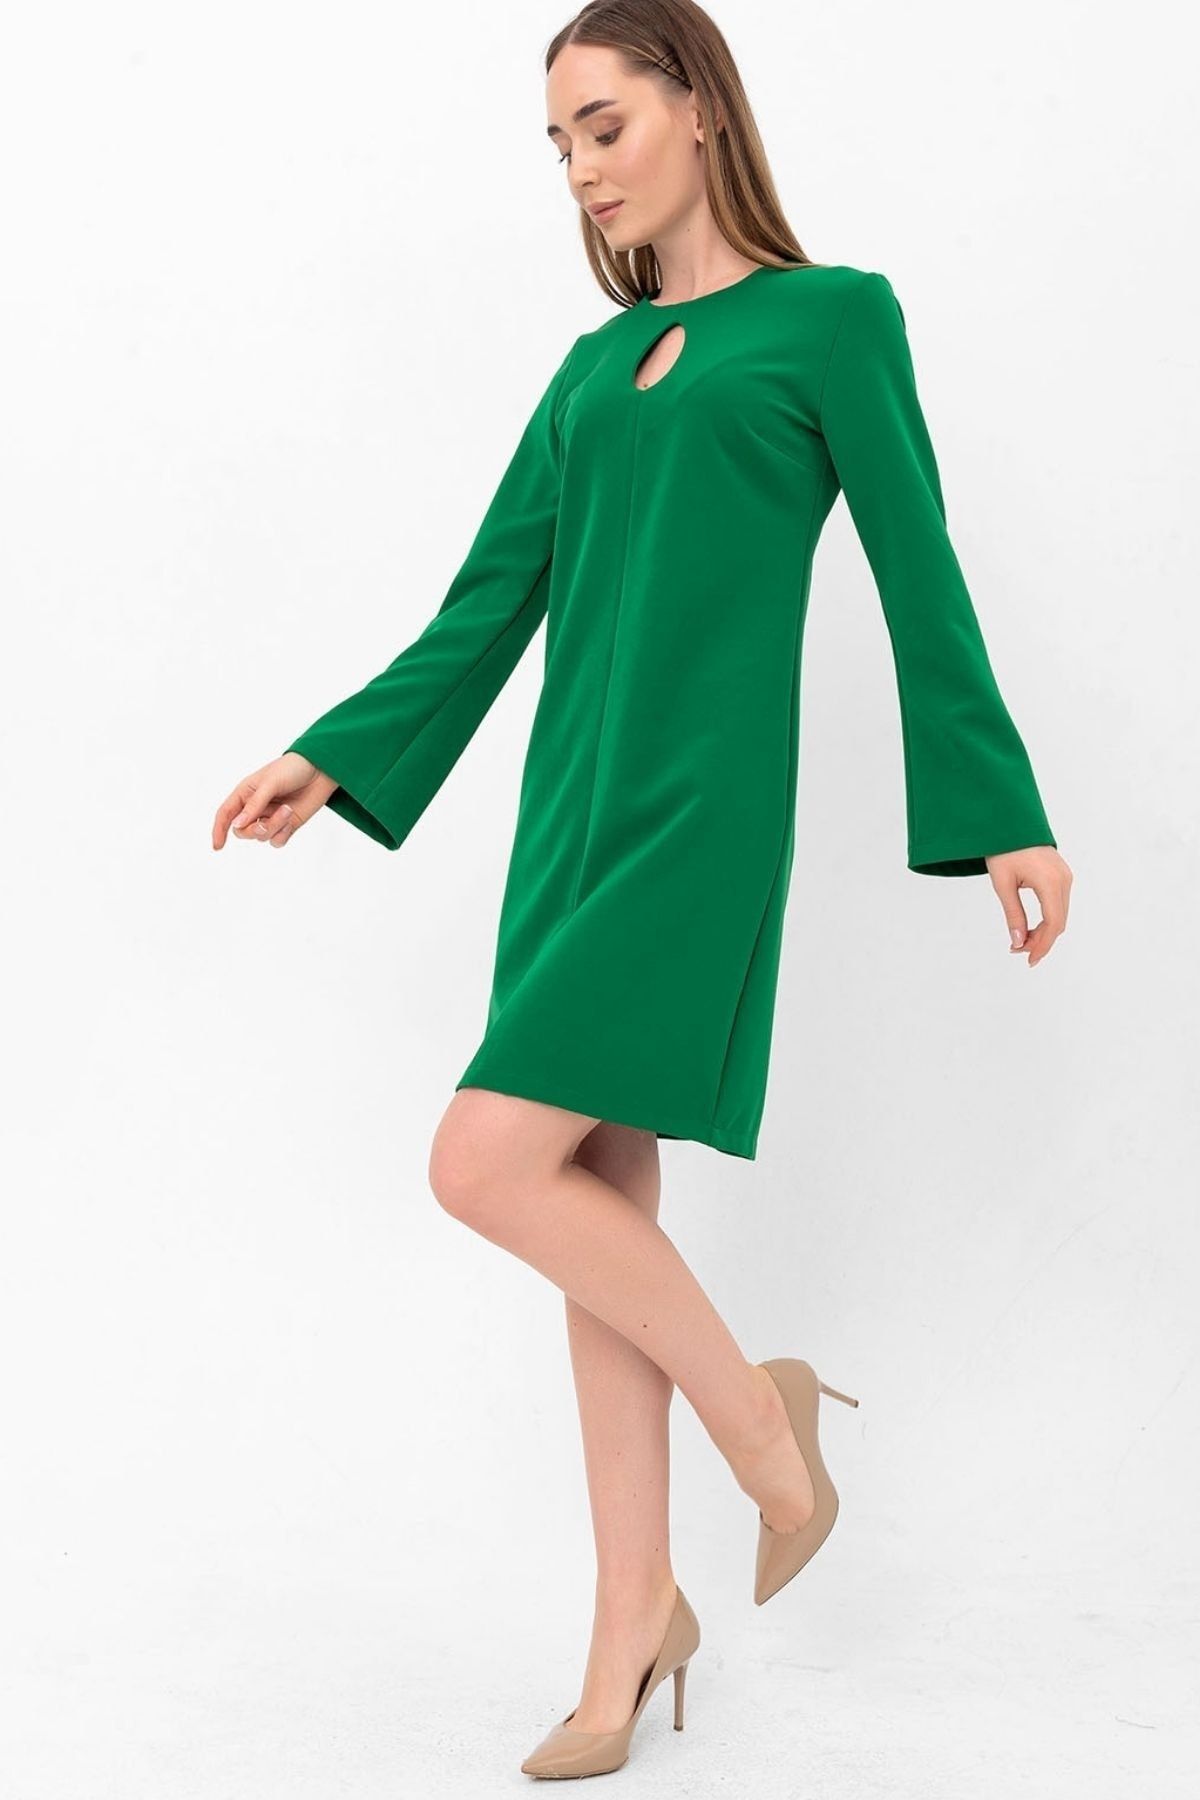 Laranor Yeşil Damla Yaka Yarım Ispanyol Kol Krep Elbise